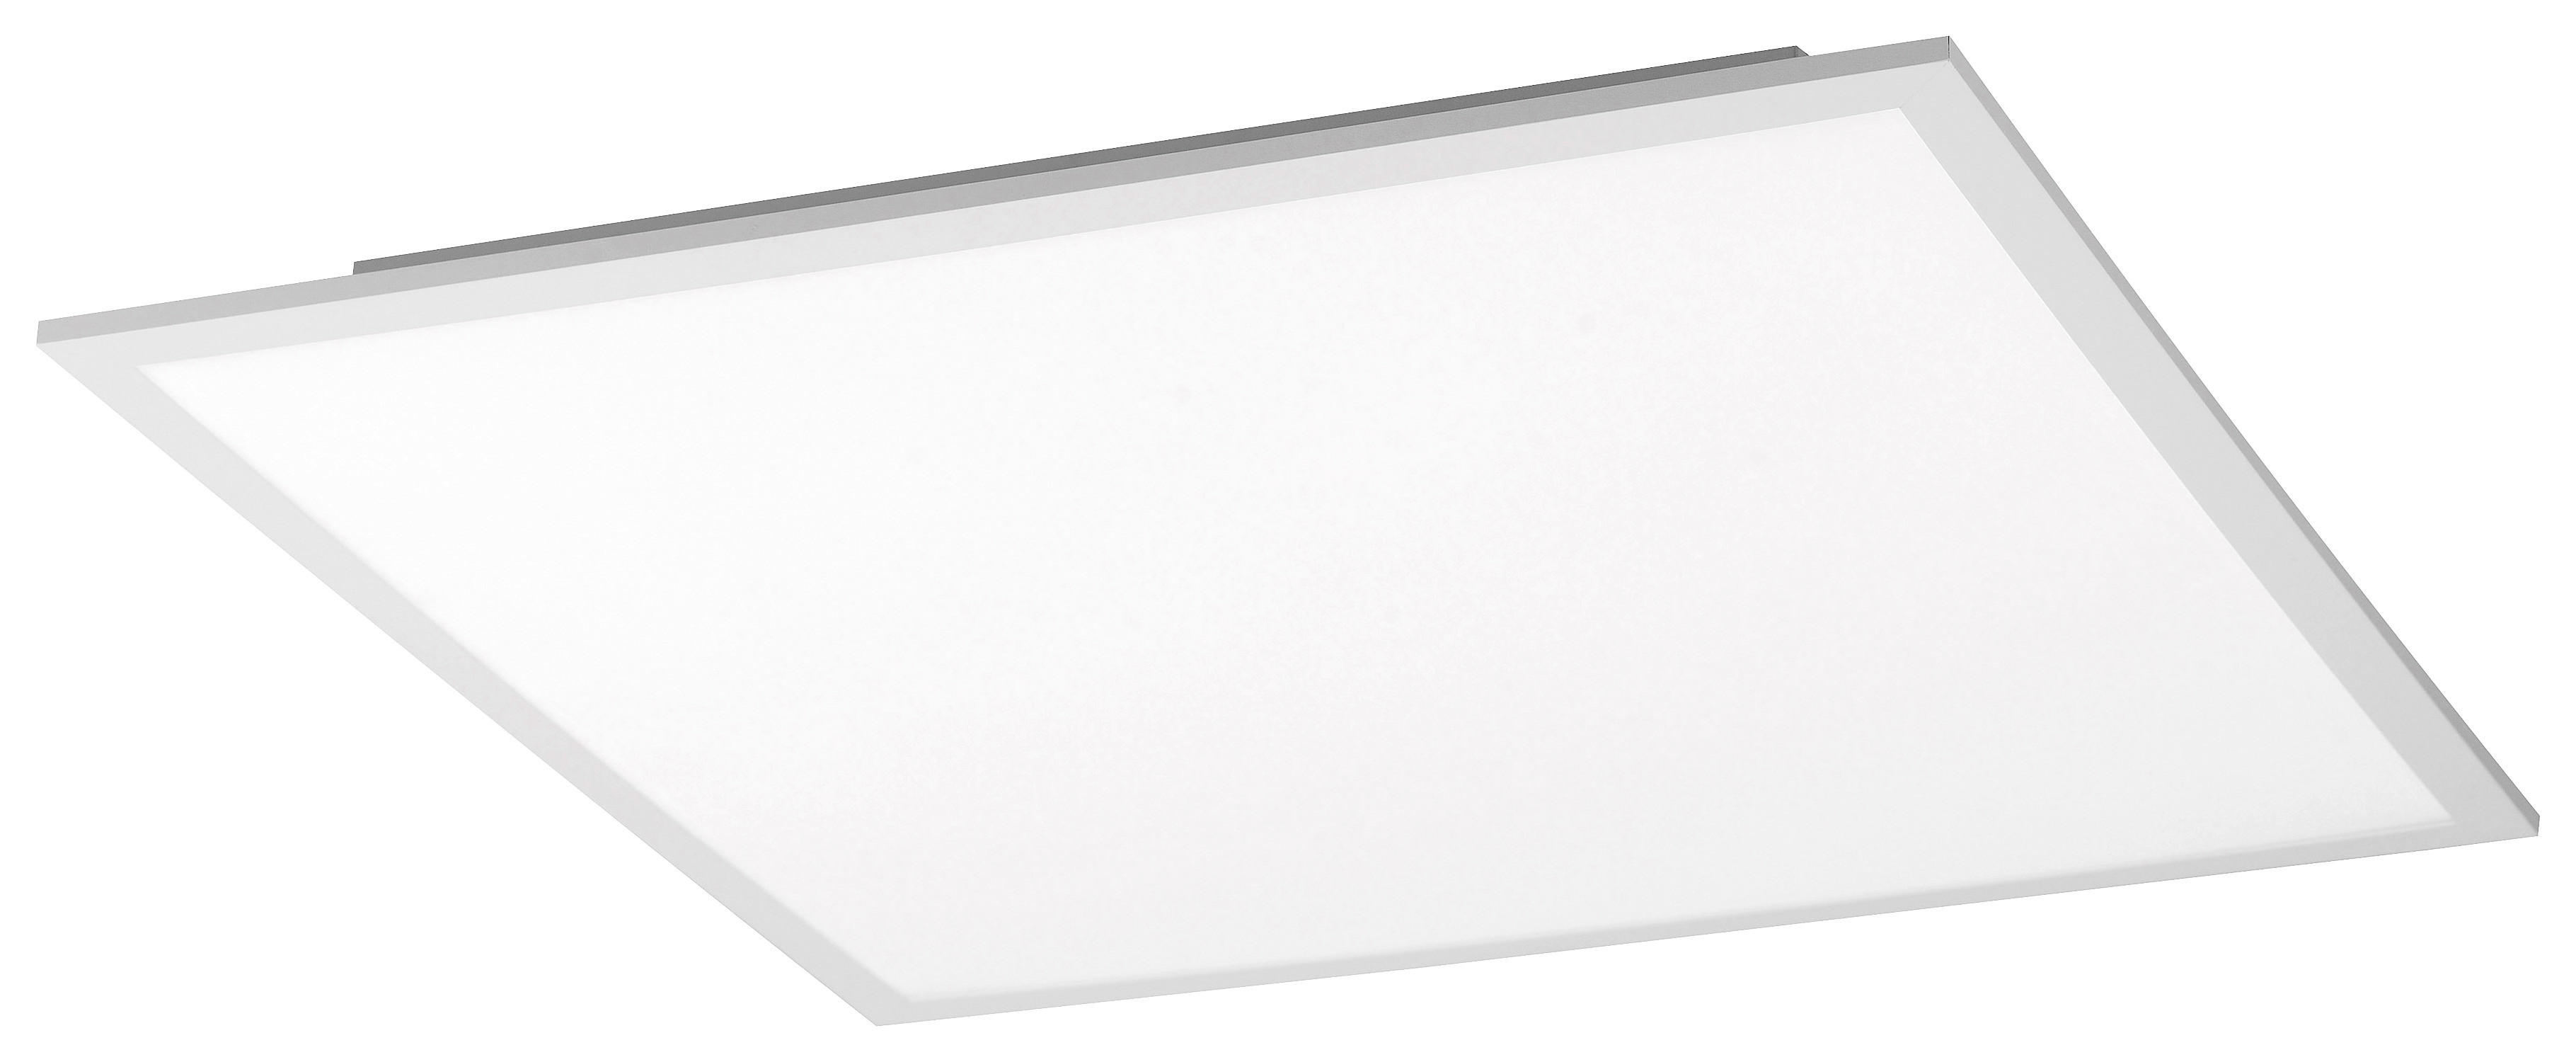 LED-DECKENLEUCHTE 24 W    45/45/5,6 cm  - Weiß, Design, Kunststoff/Metall (45/45/5,6cm)